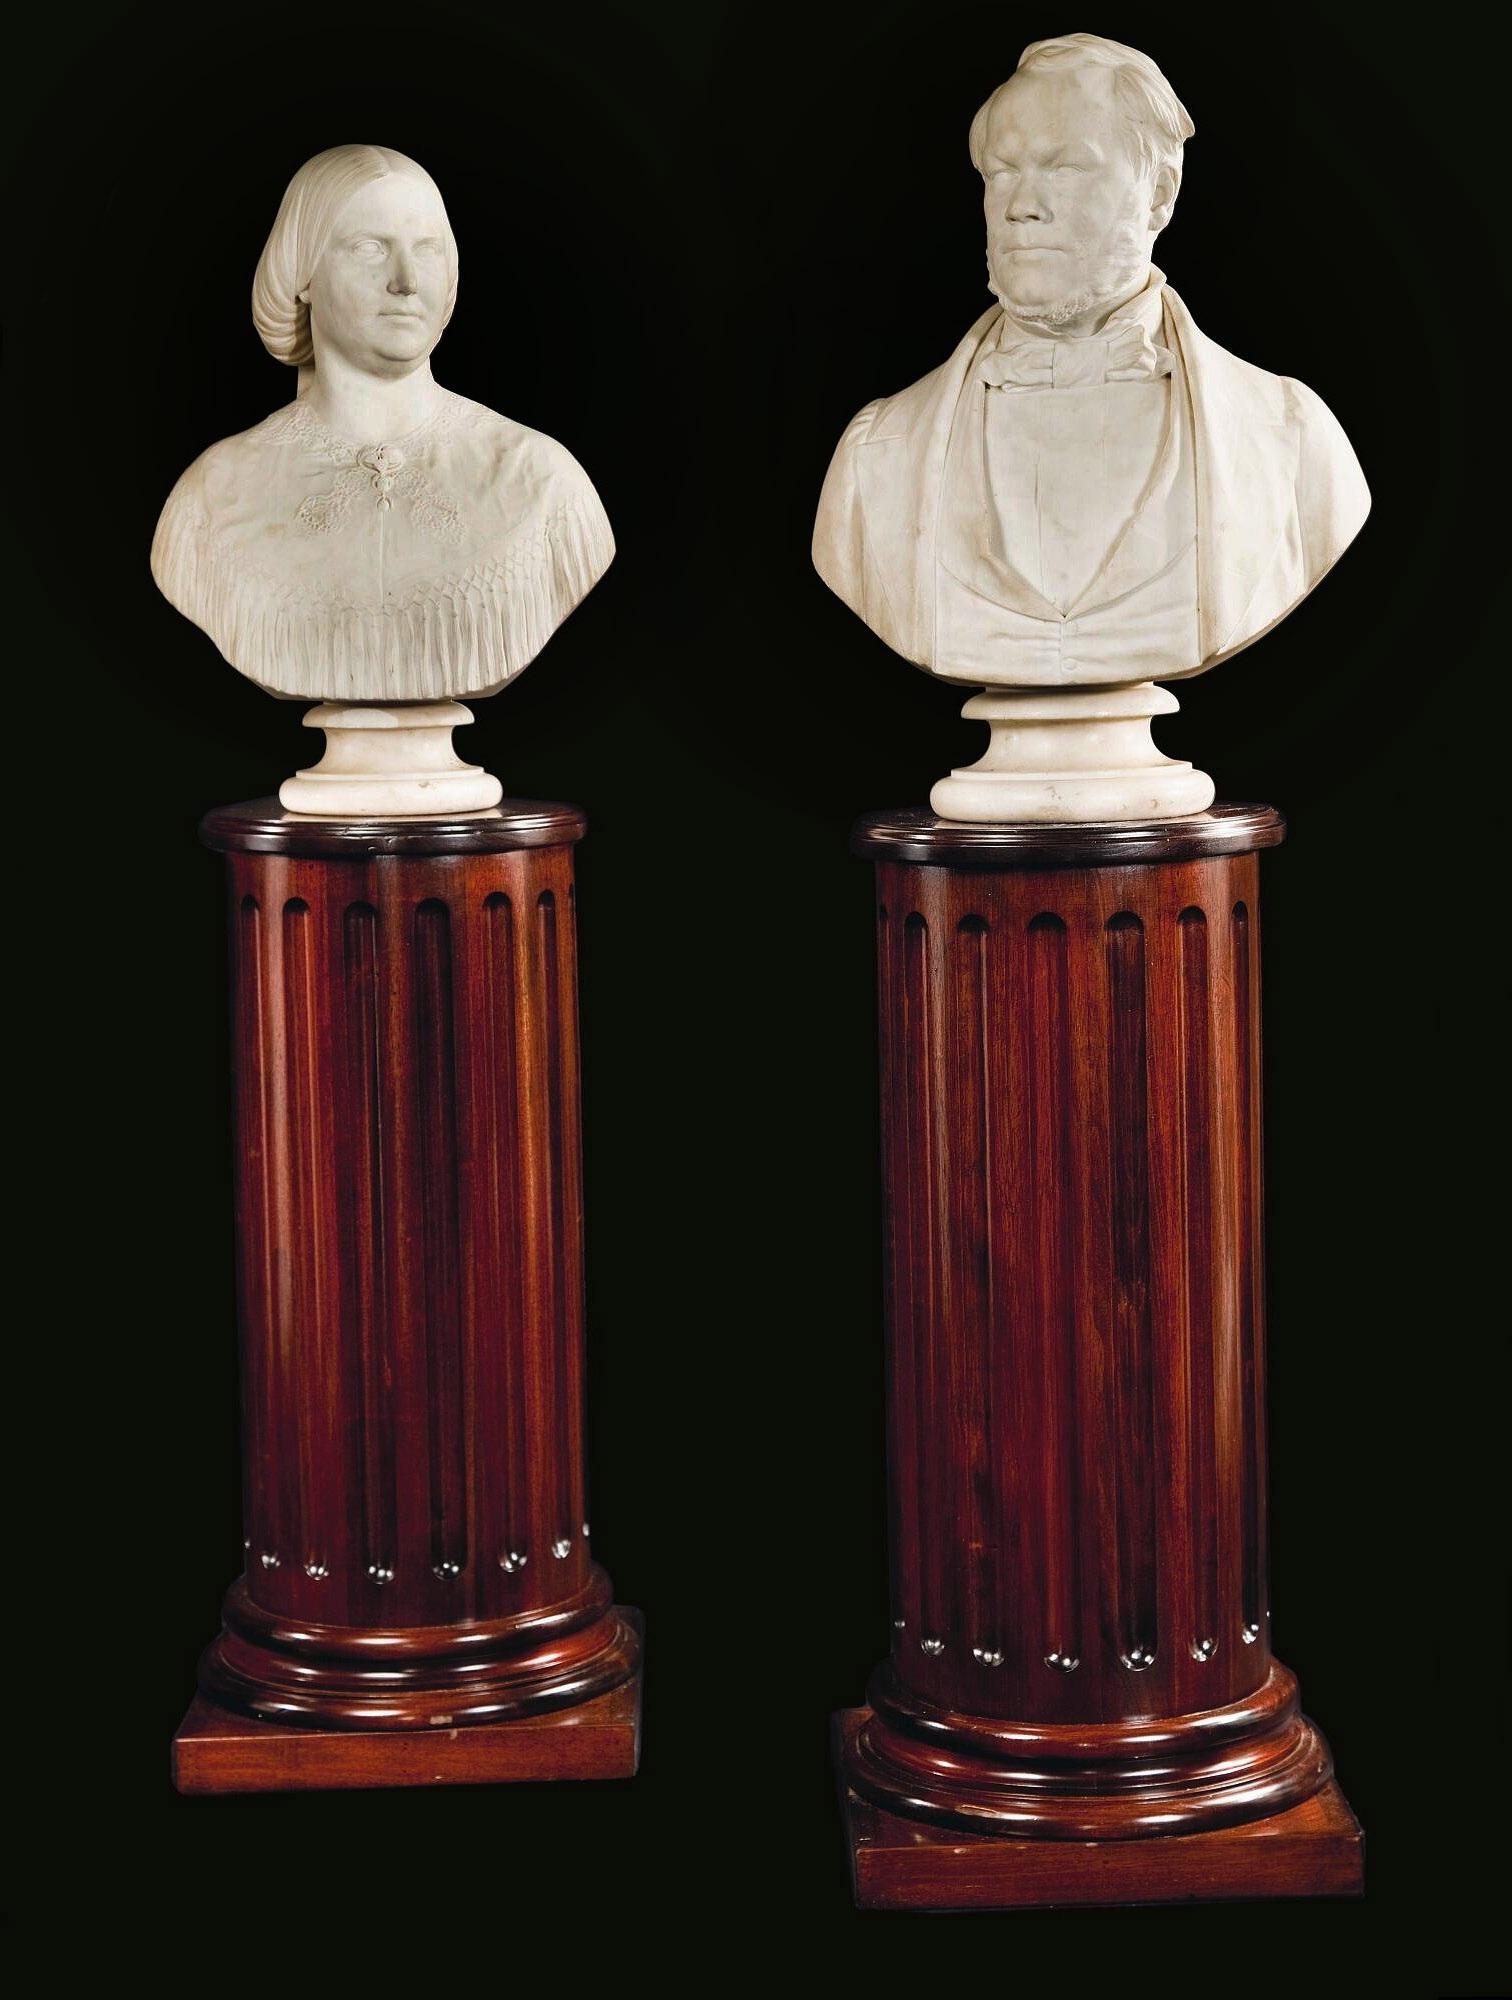 Paire de bustes anglais en marbre de Carrare sculptés sur piédestal en bois du milieu du 19e siècle par John Denton Crittenden

Représentation d'un homme et d'une femme aisés.

Chacun a signé J&D. CRITTENDEN. SC et daté de 1860.

John Denton